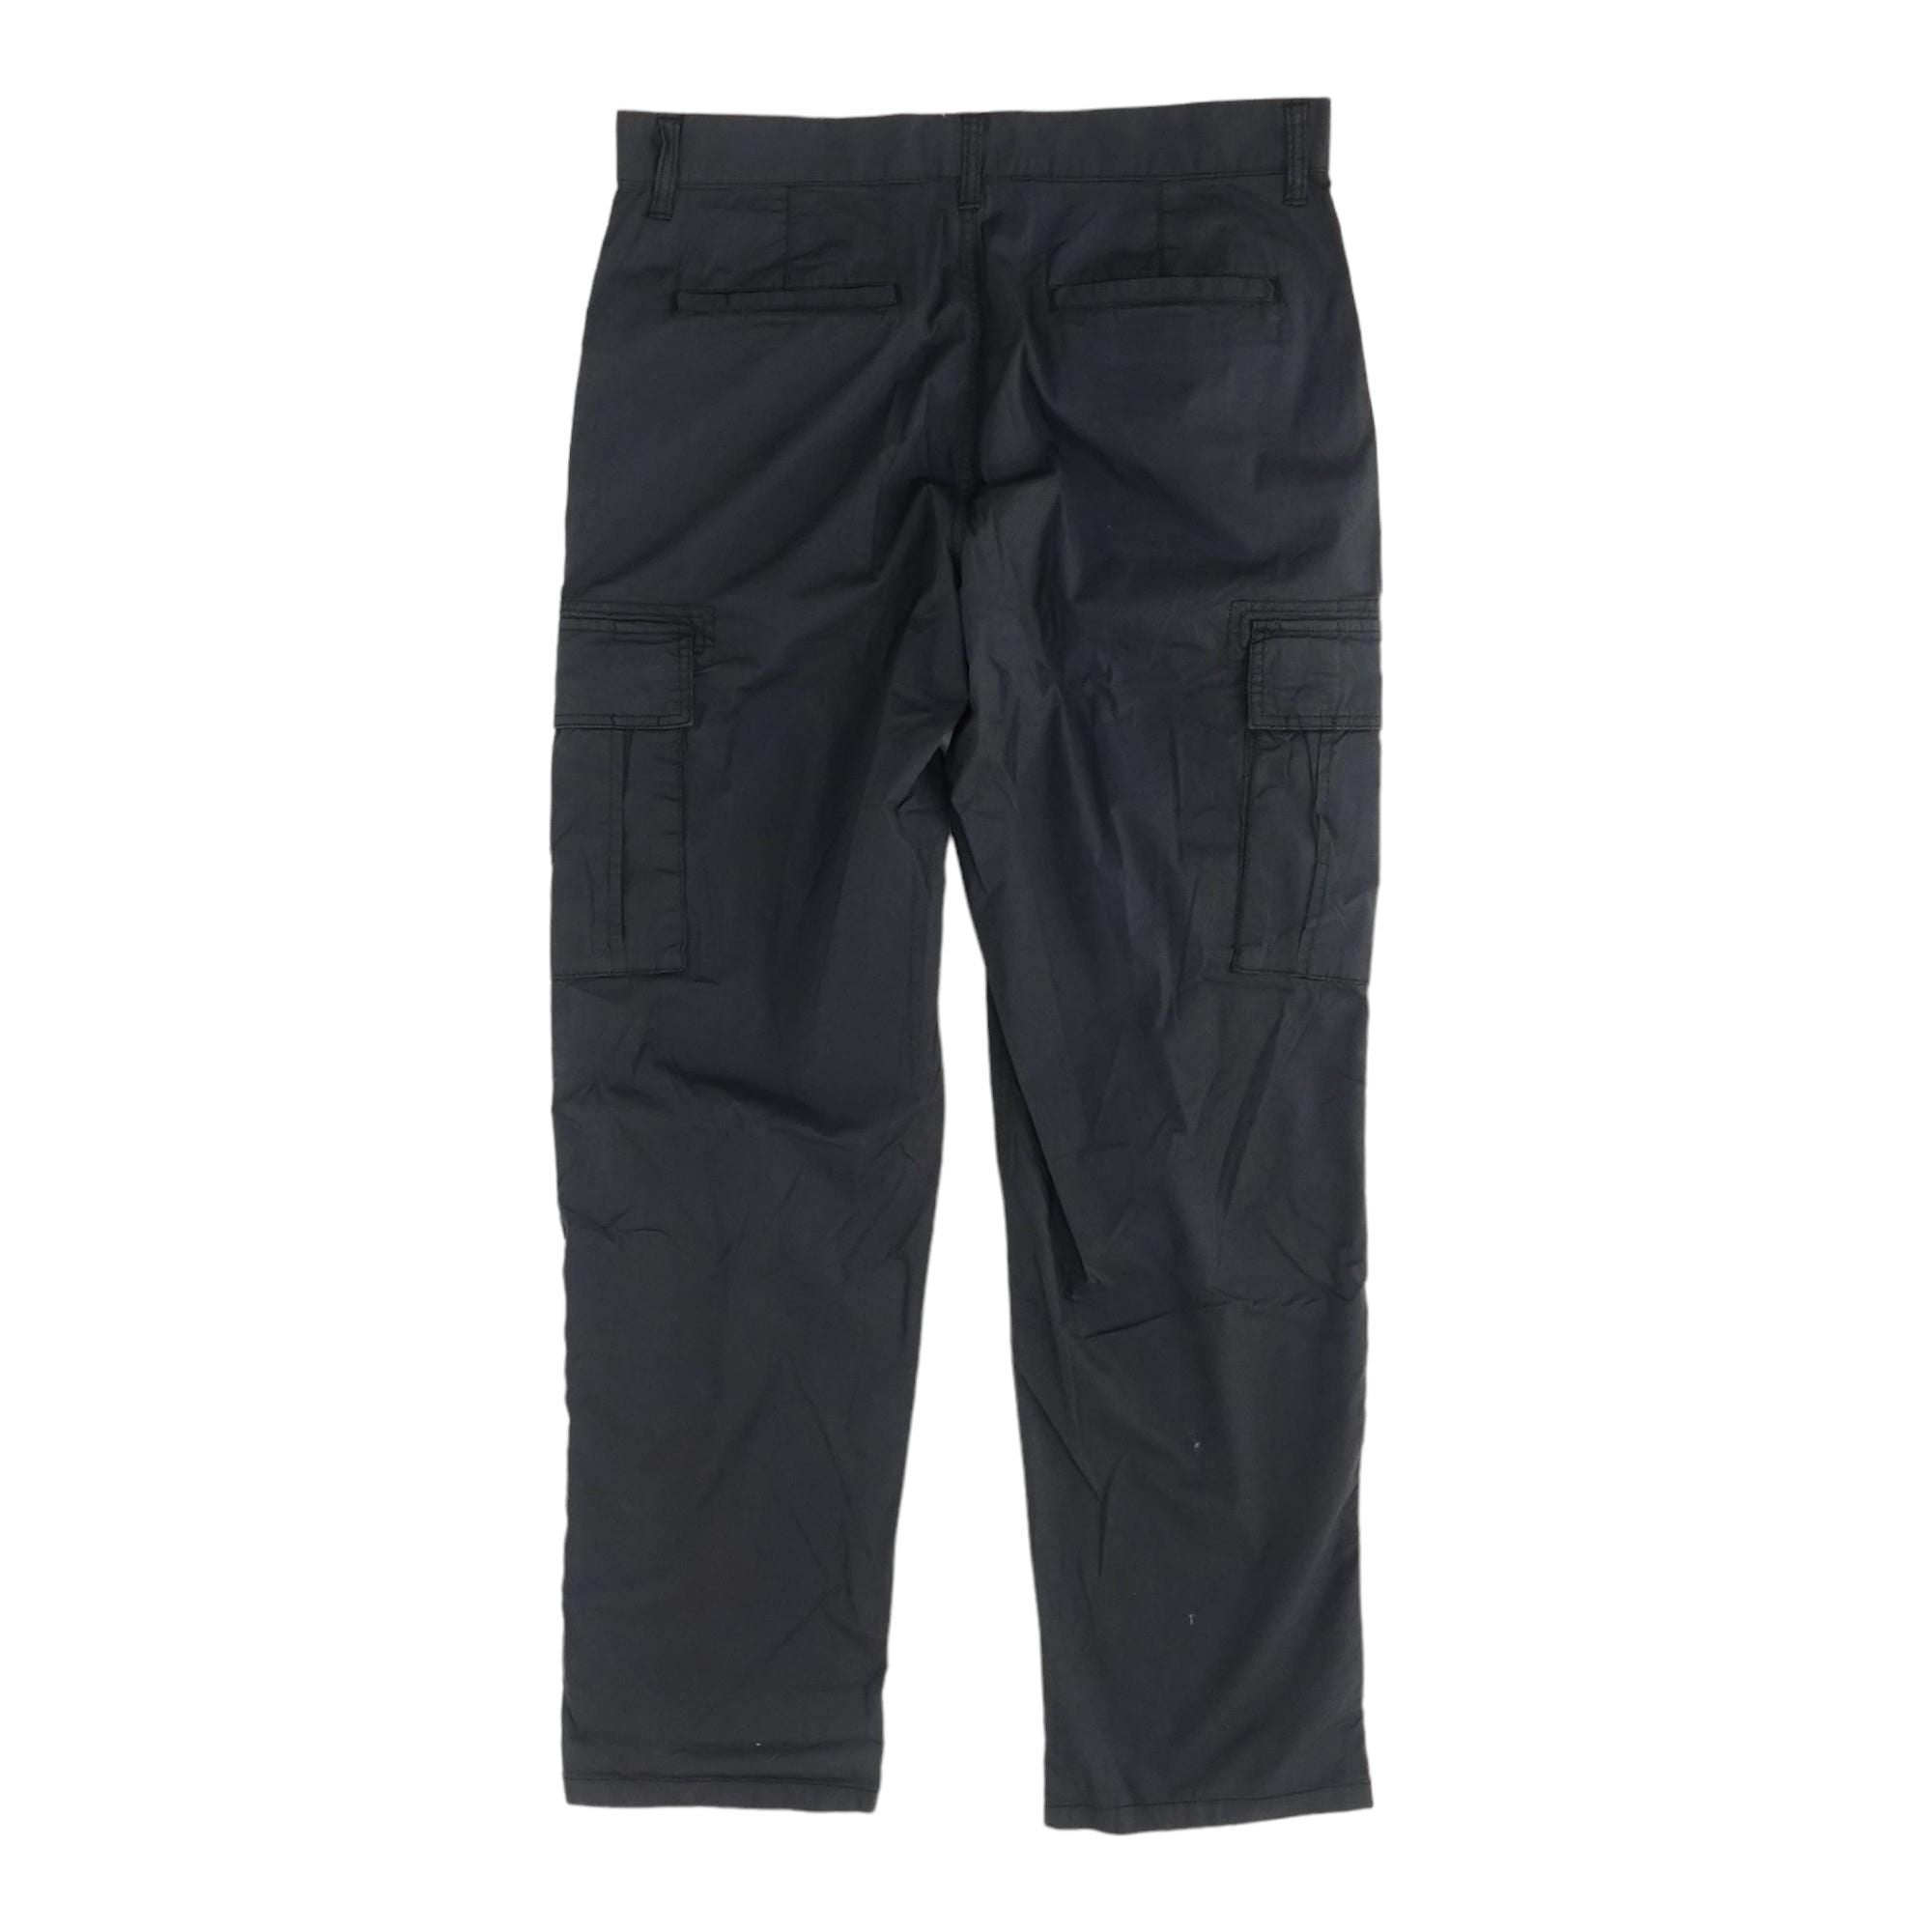 Buy Solid Dark Grey Cargo Pants for Men Online in India -Beyoung